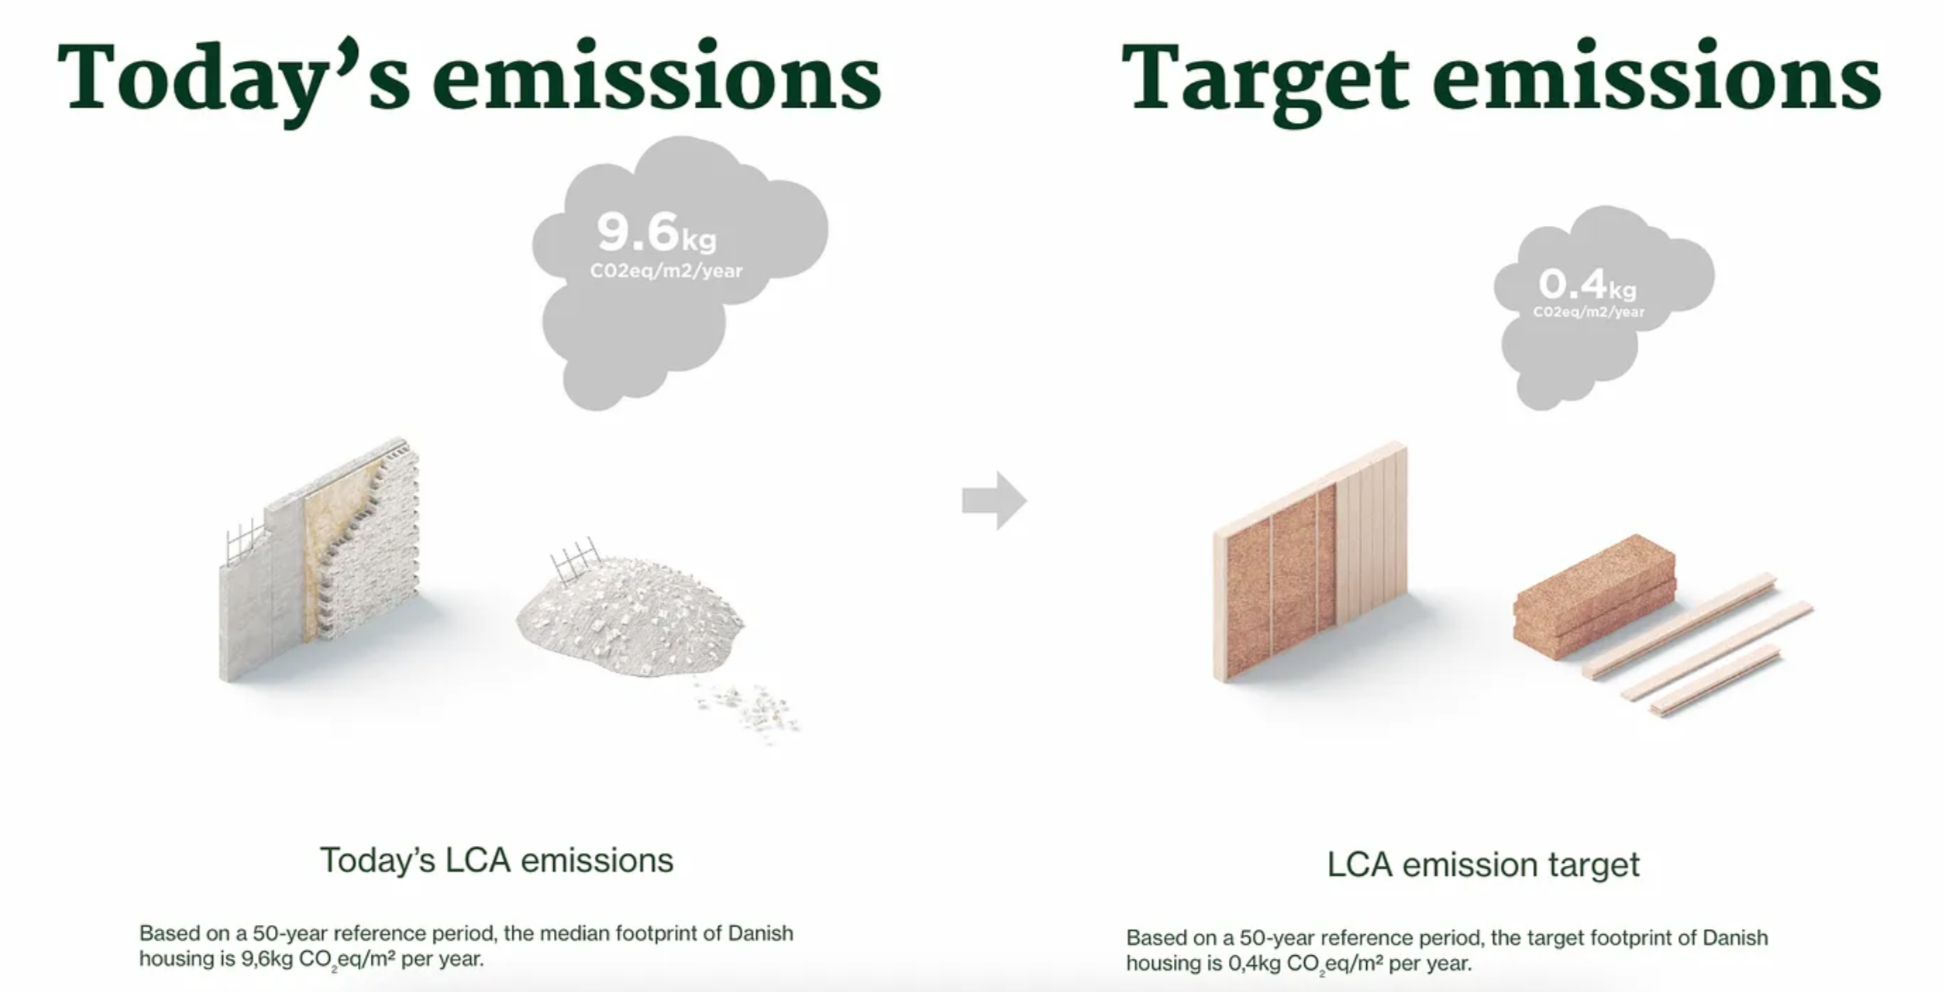 Target emissions